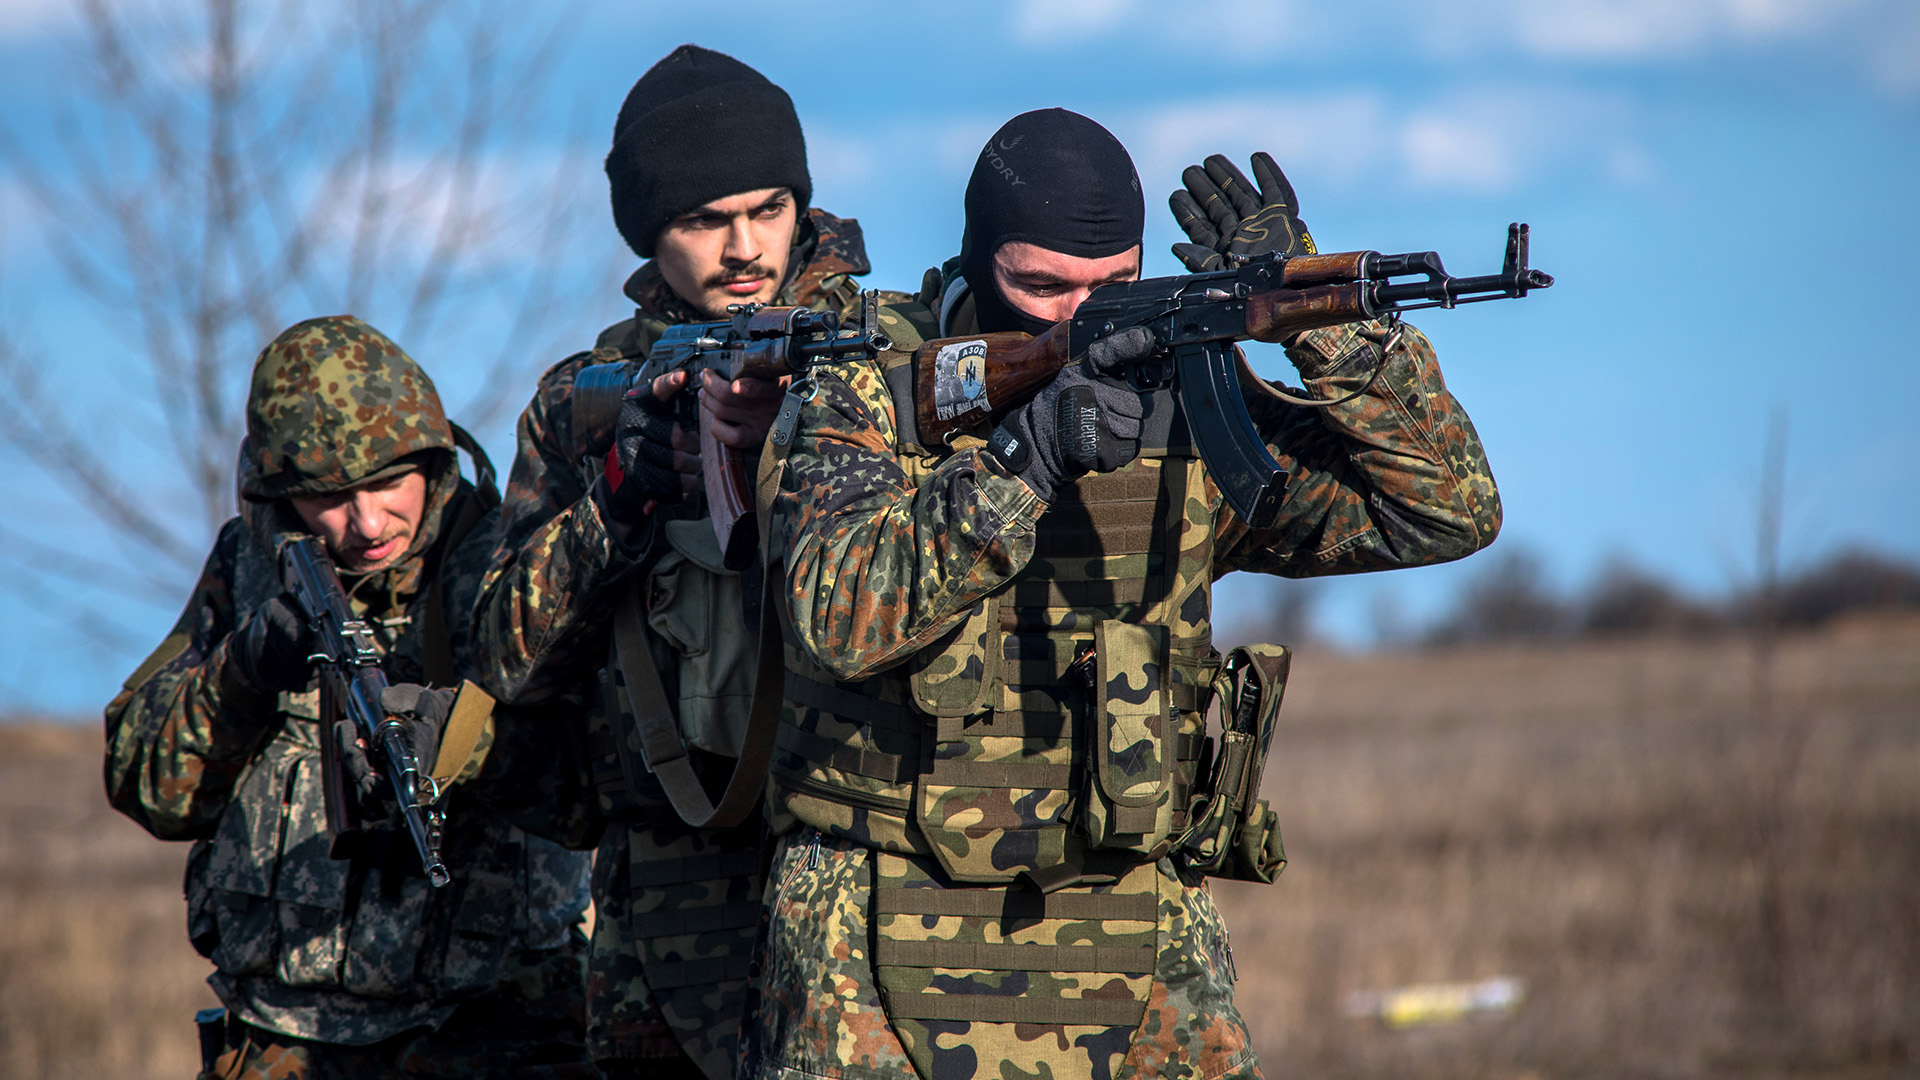 Soldaten des Asow-Regiments bei einer Übung im Jahr 2015 | picture alliance / dpa